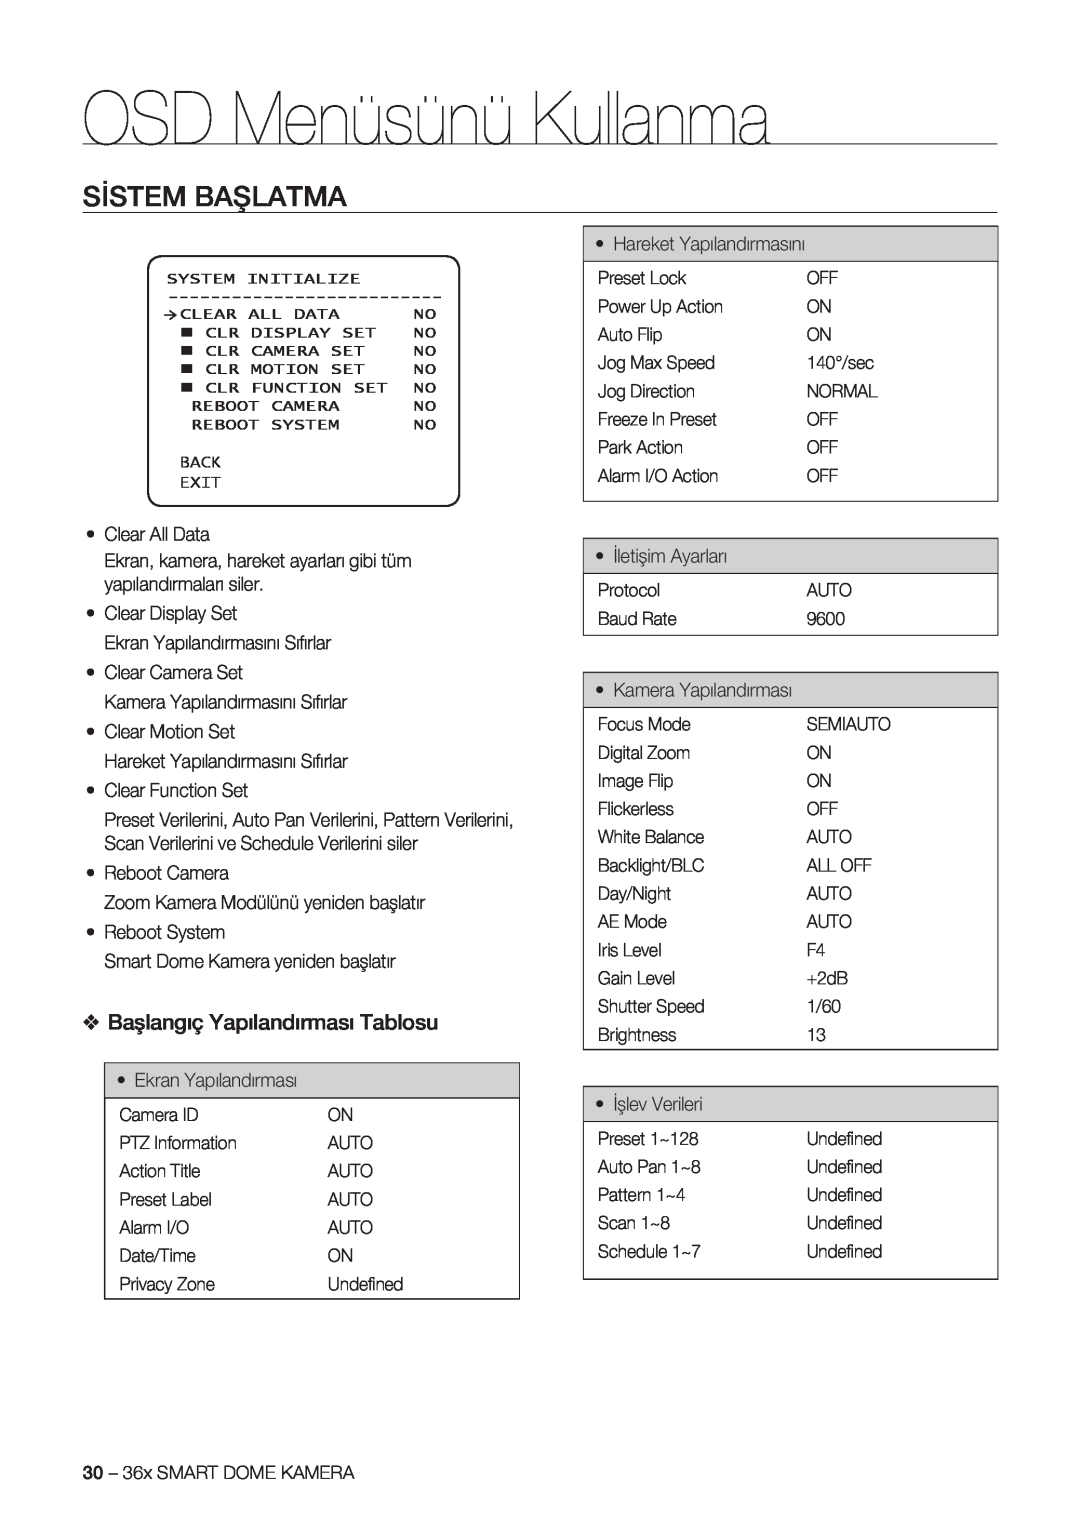 Samsung SCC-C7478P manual Sistem Başlatma, Başlangıç Yapılandırması Tablosu, OSD Menüsünü Kullanma 